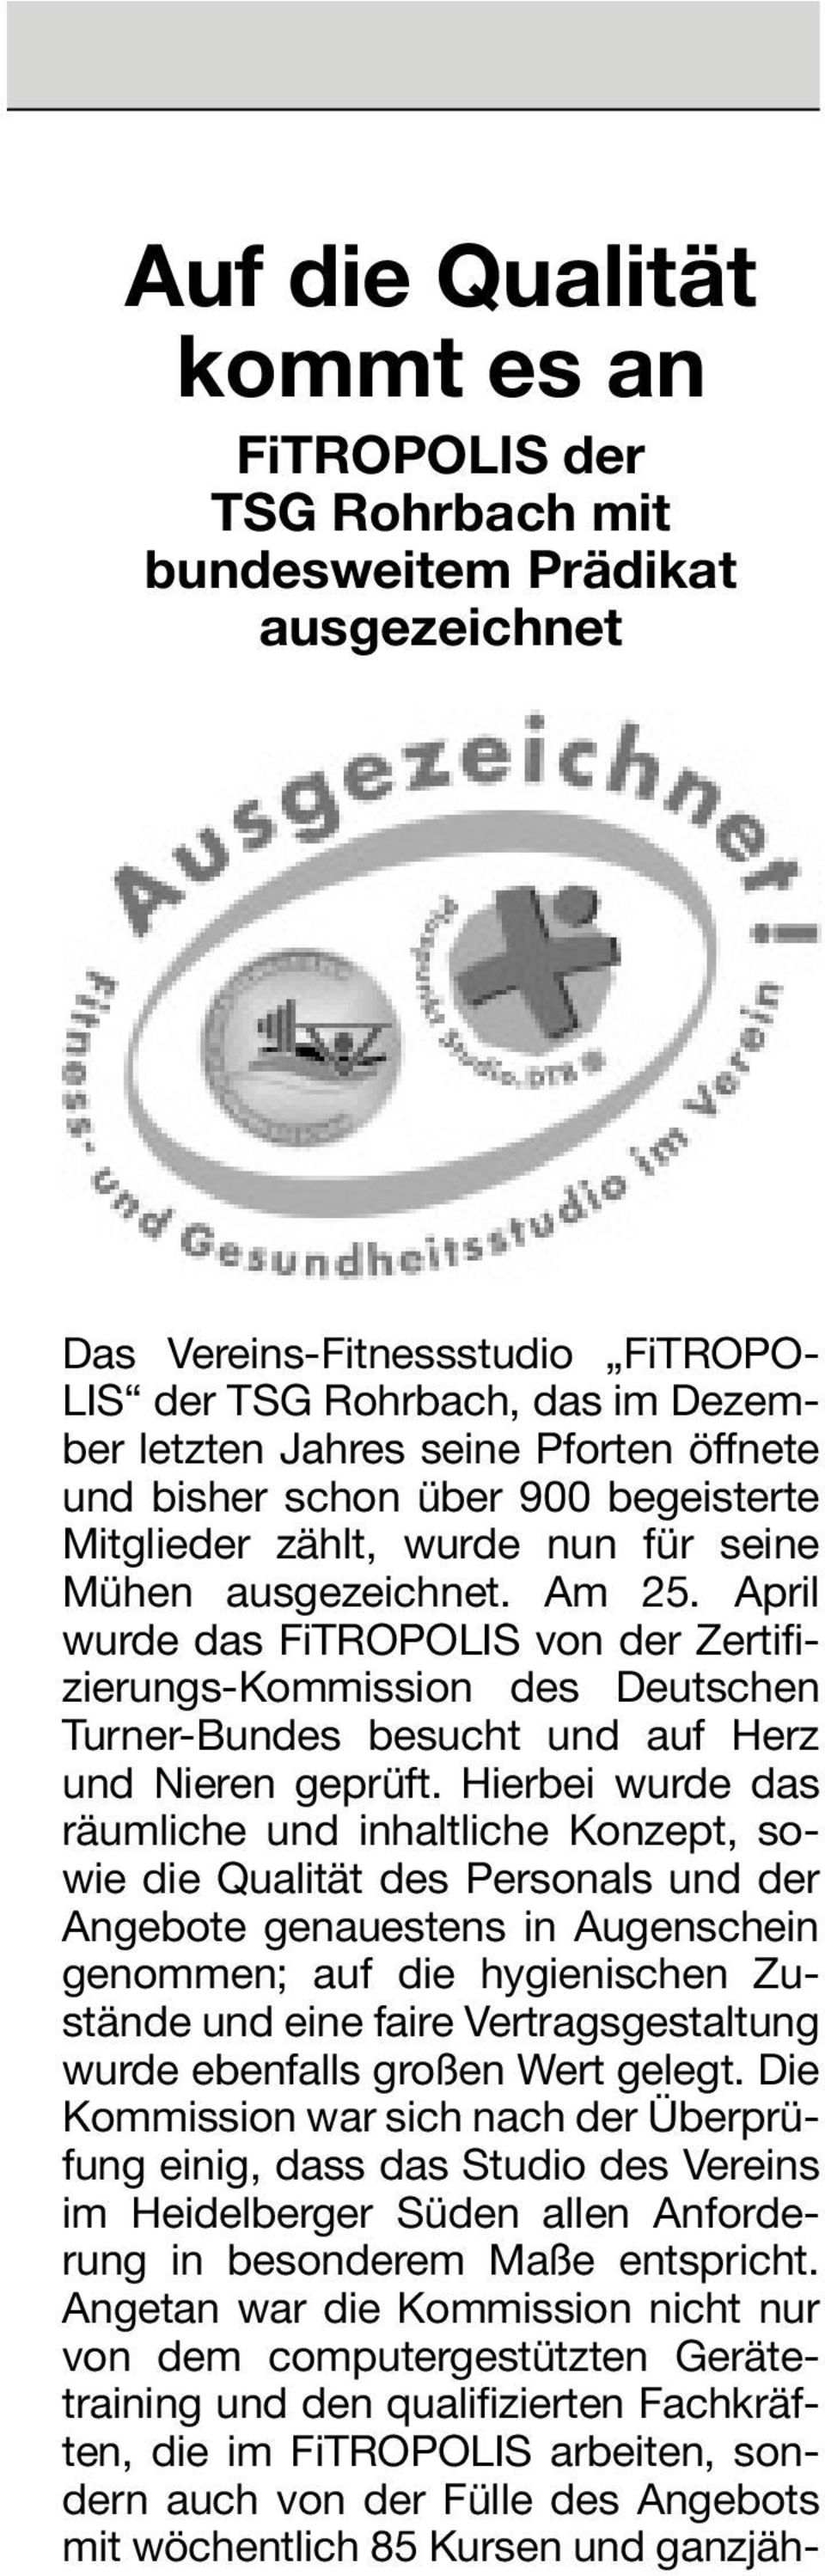 April wurde das FiTROPOLIS von der Zertifizierungs-Kommission des Deutschen Turner-Bundes besucht und auf Herz und Nieren geprüft.